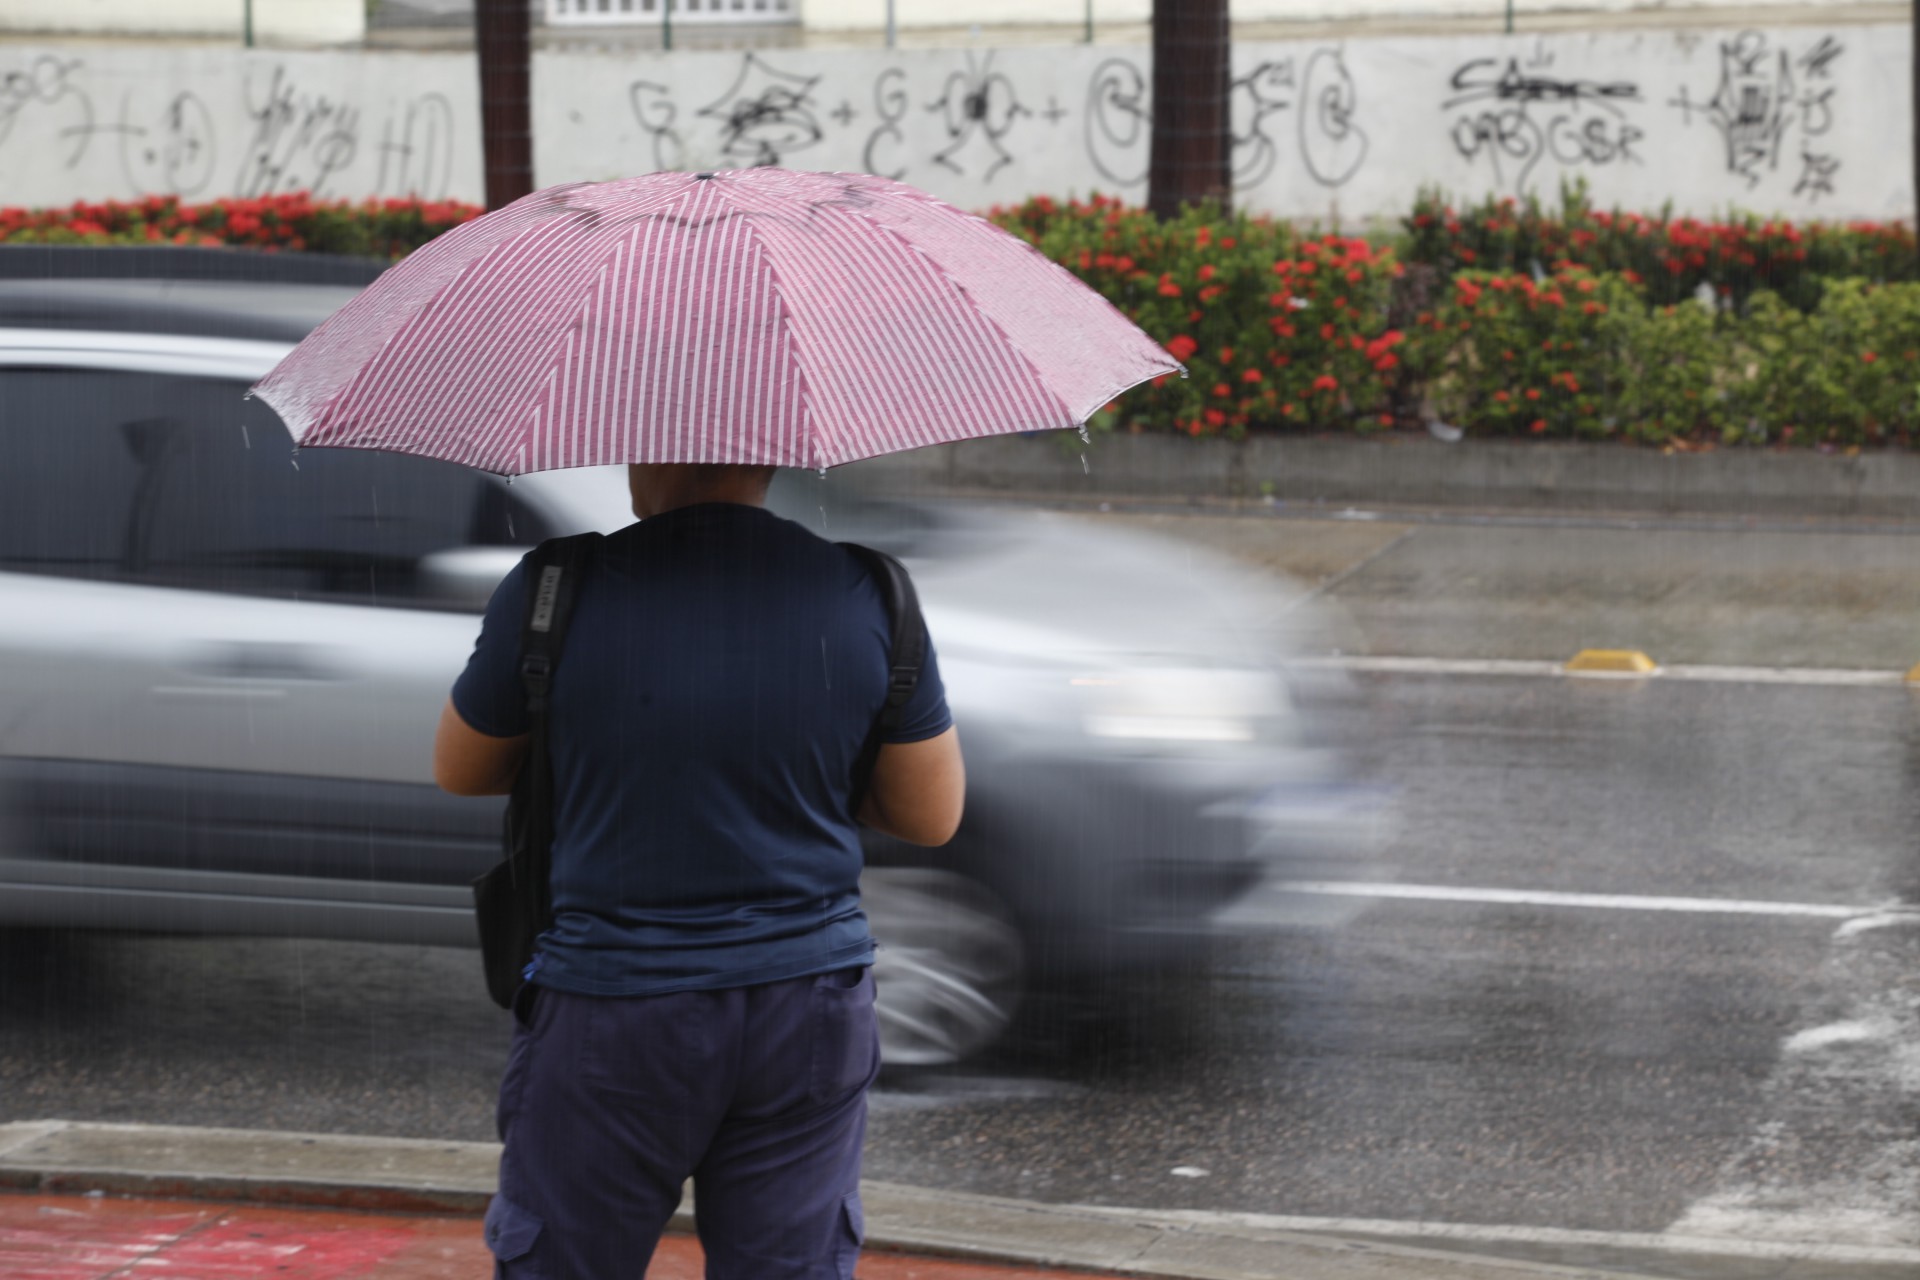 Imagem de apoio ilustrativo. Média de chuvas no Estado em agosto gira em torno de 5 milímetros (mm). Em Fortaleza, são esperados cerca de 10 mm (Foto: FABIO LIMA)